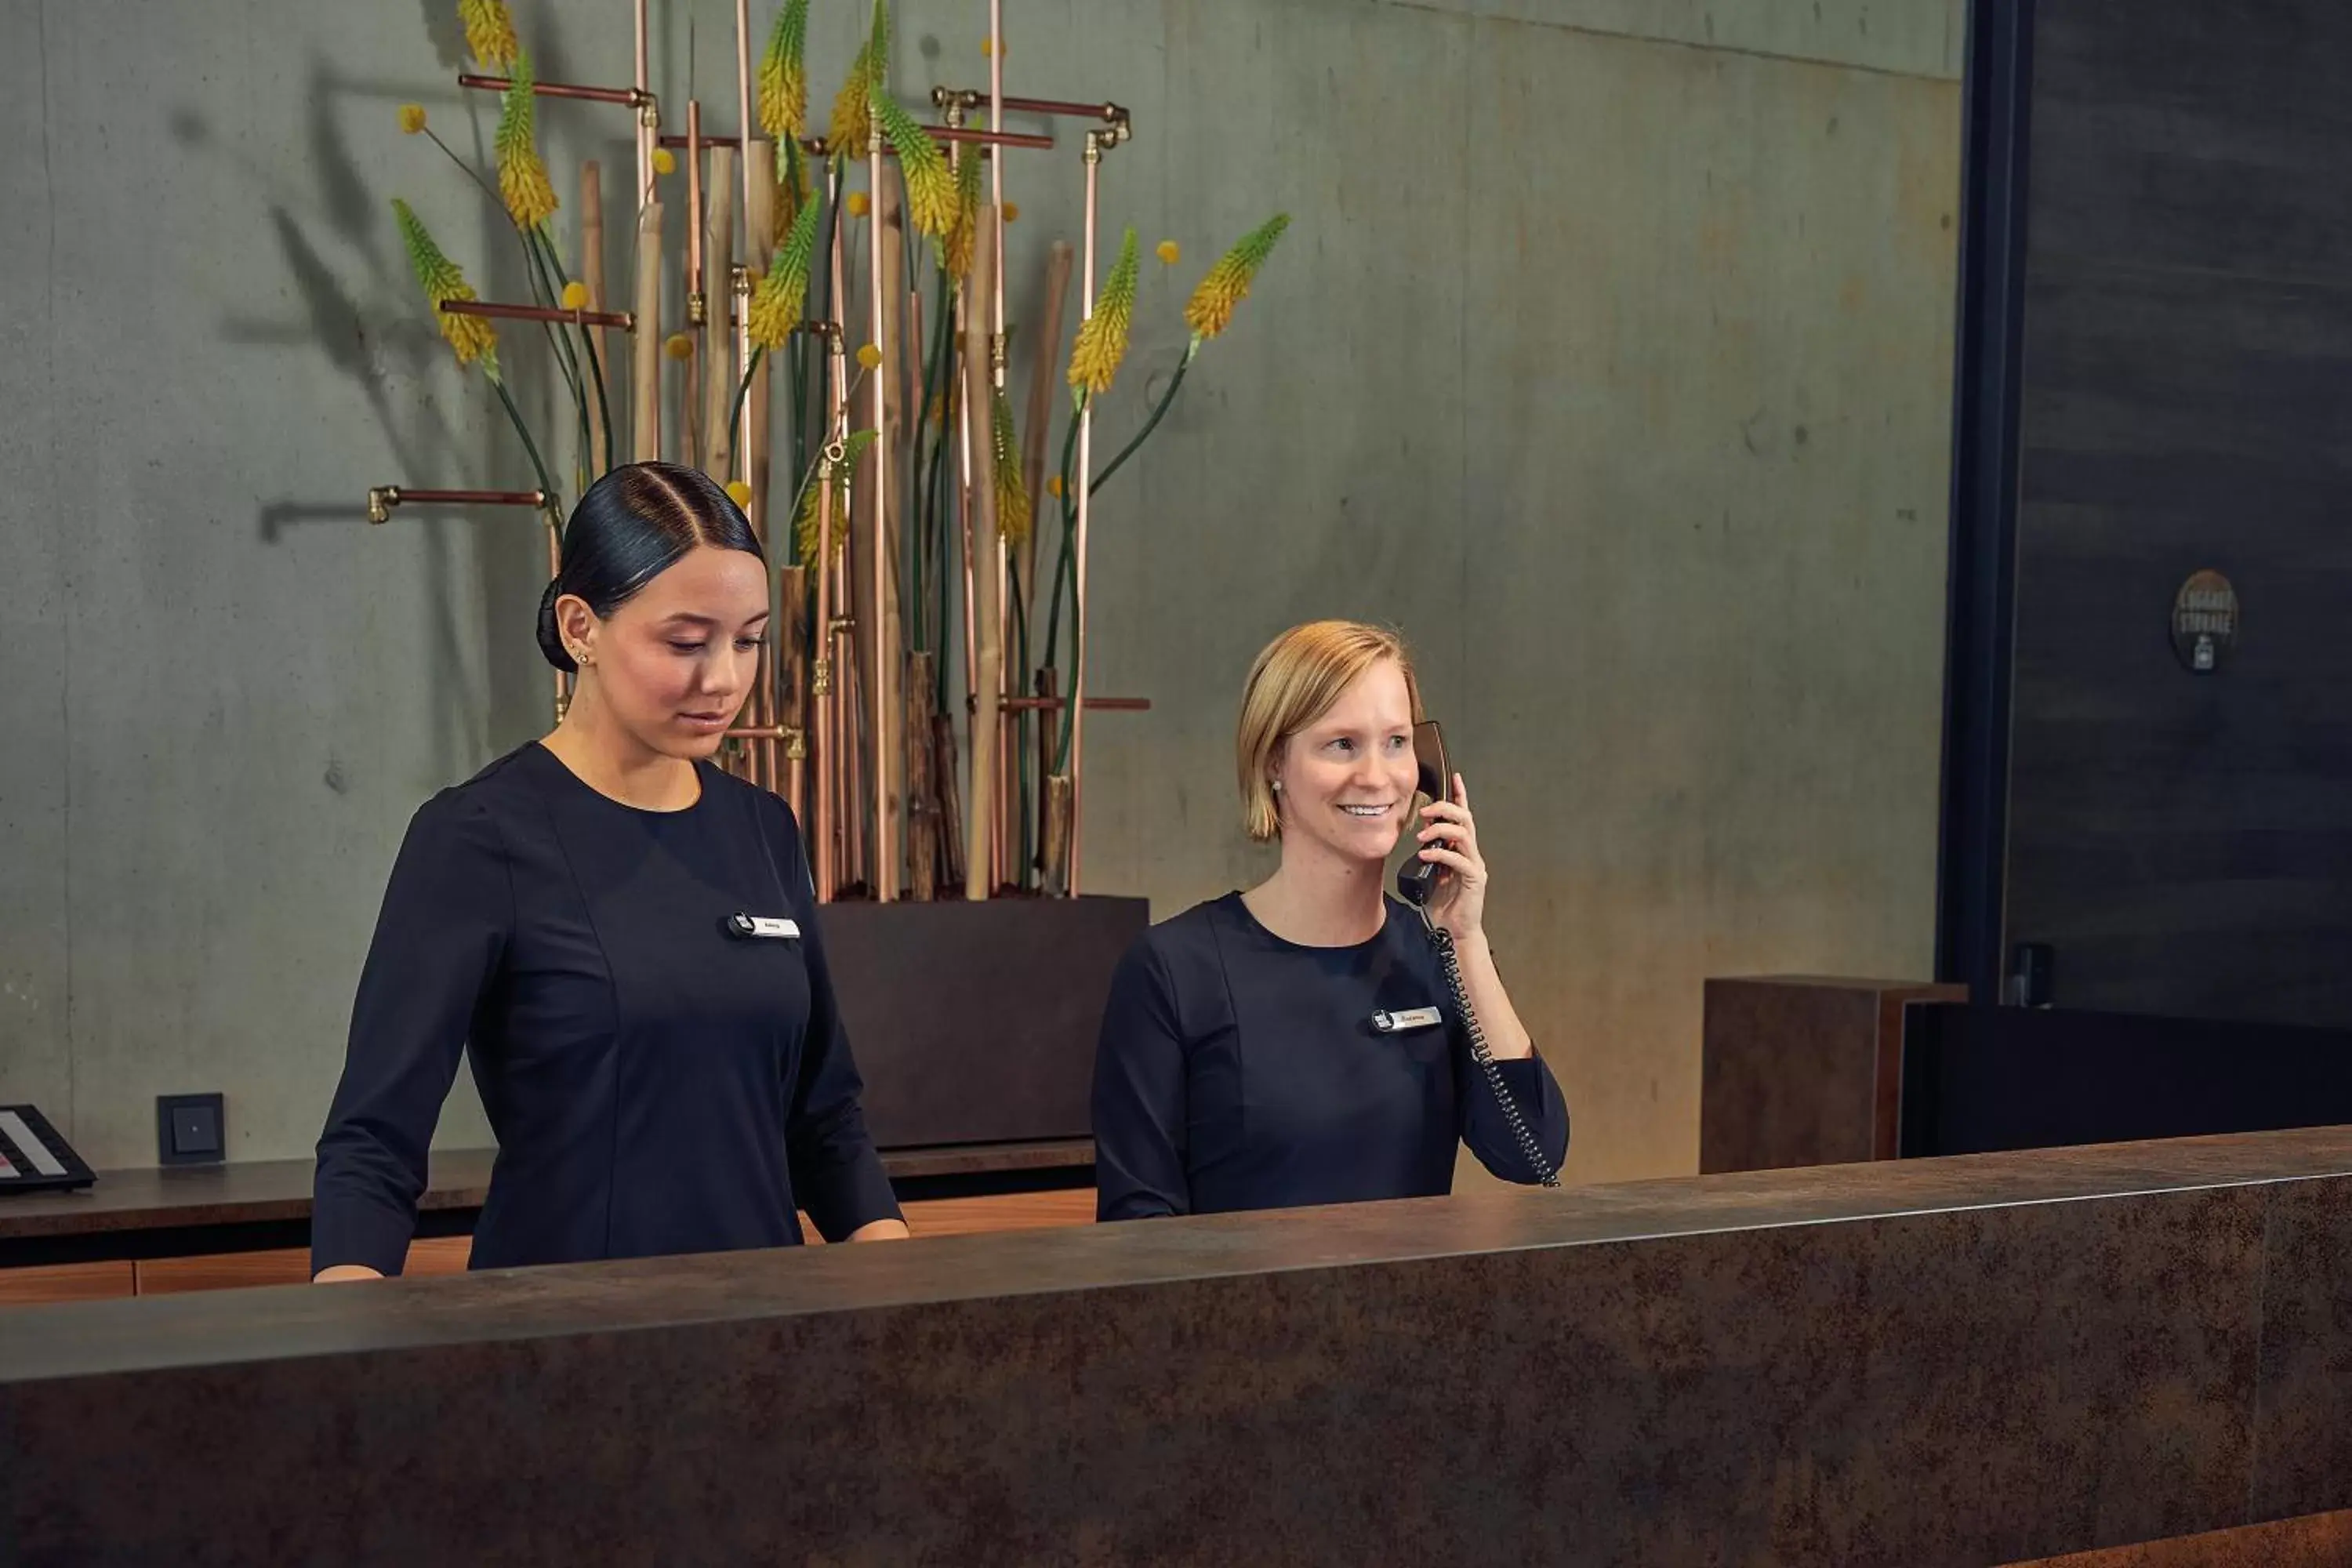 Lobby or reception in Inntel Hotels Amsterdam Landmark